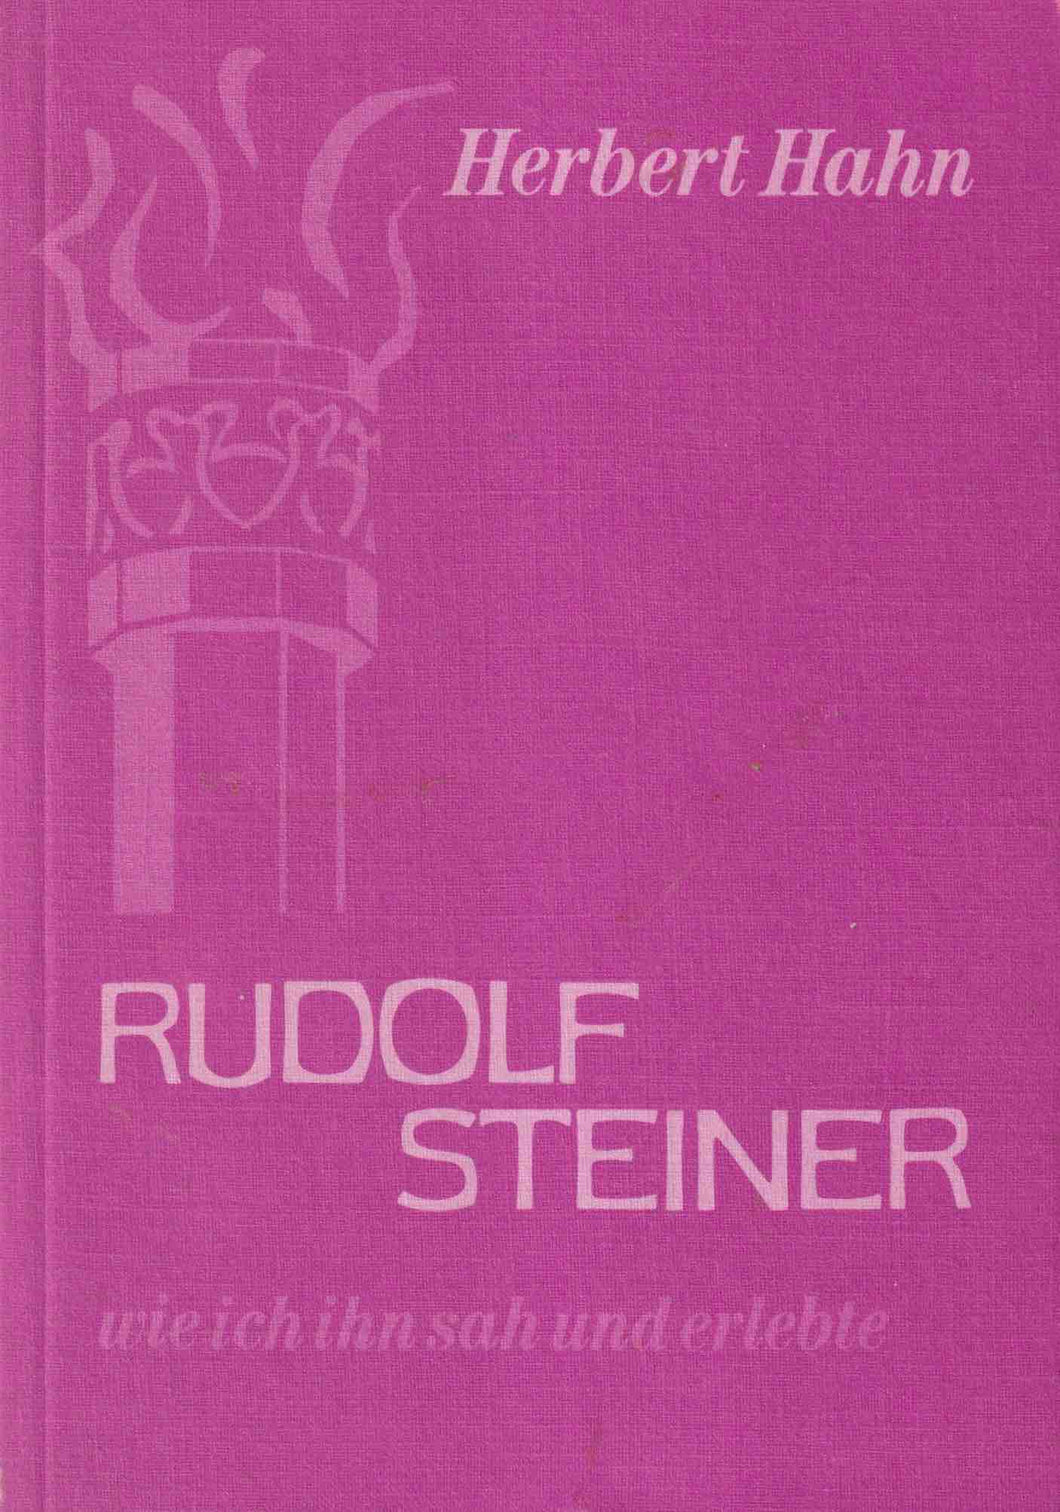 Rudolf Steiner, wie ich ihn sah und erlebte